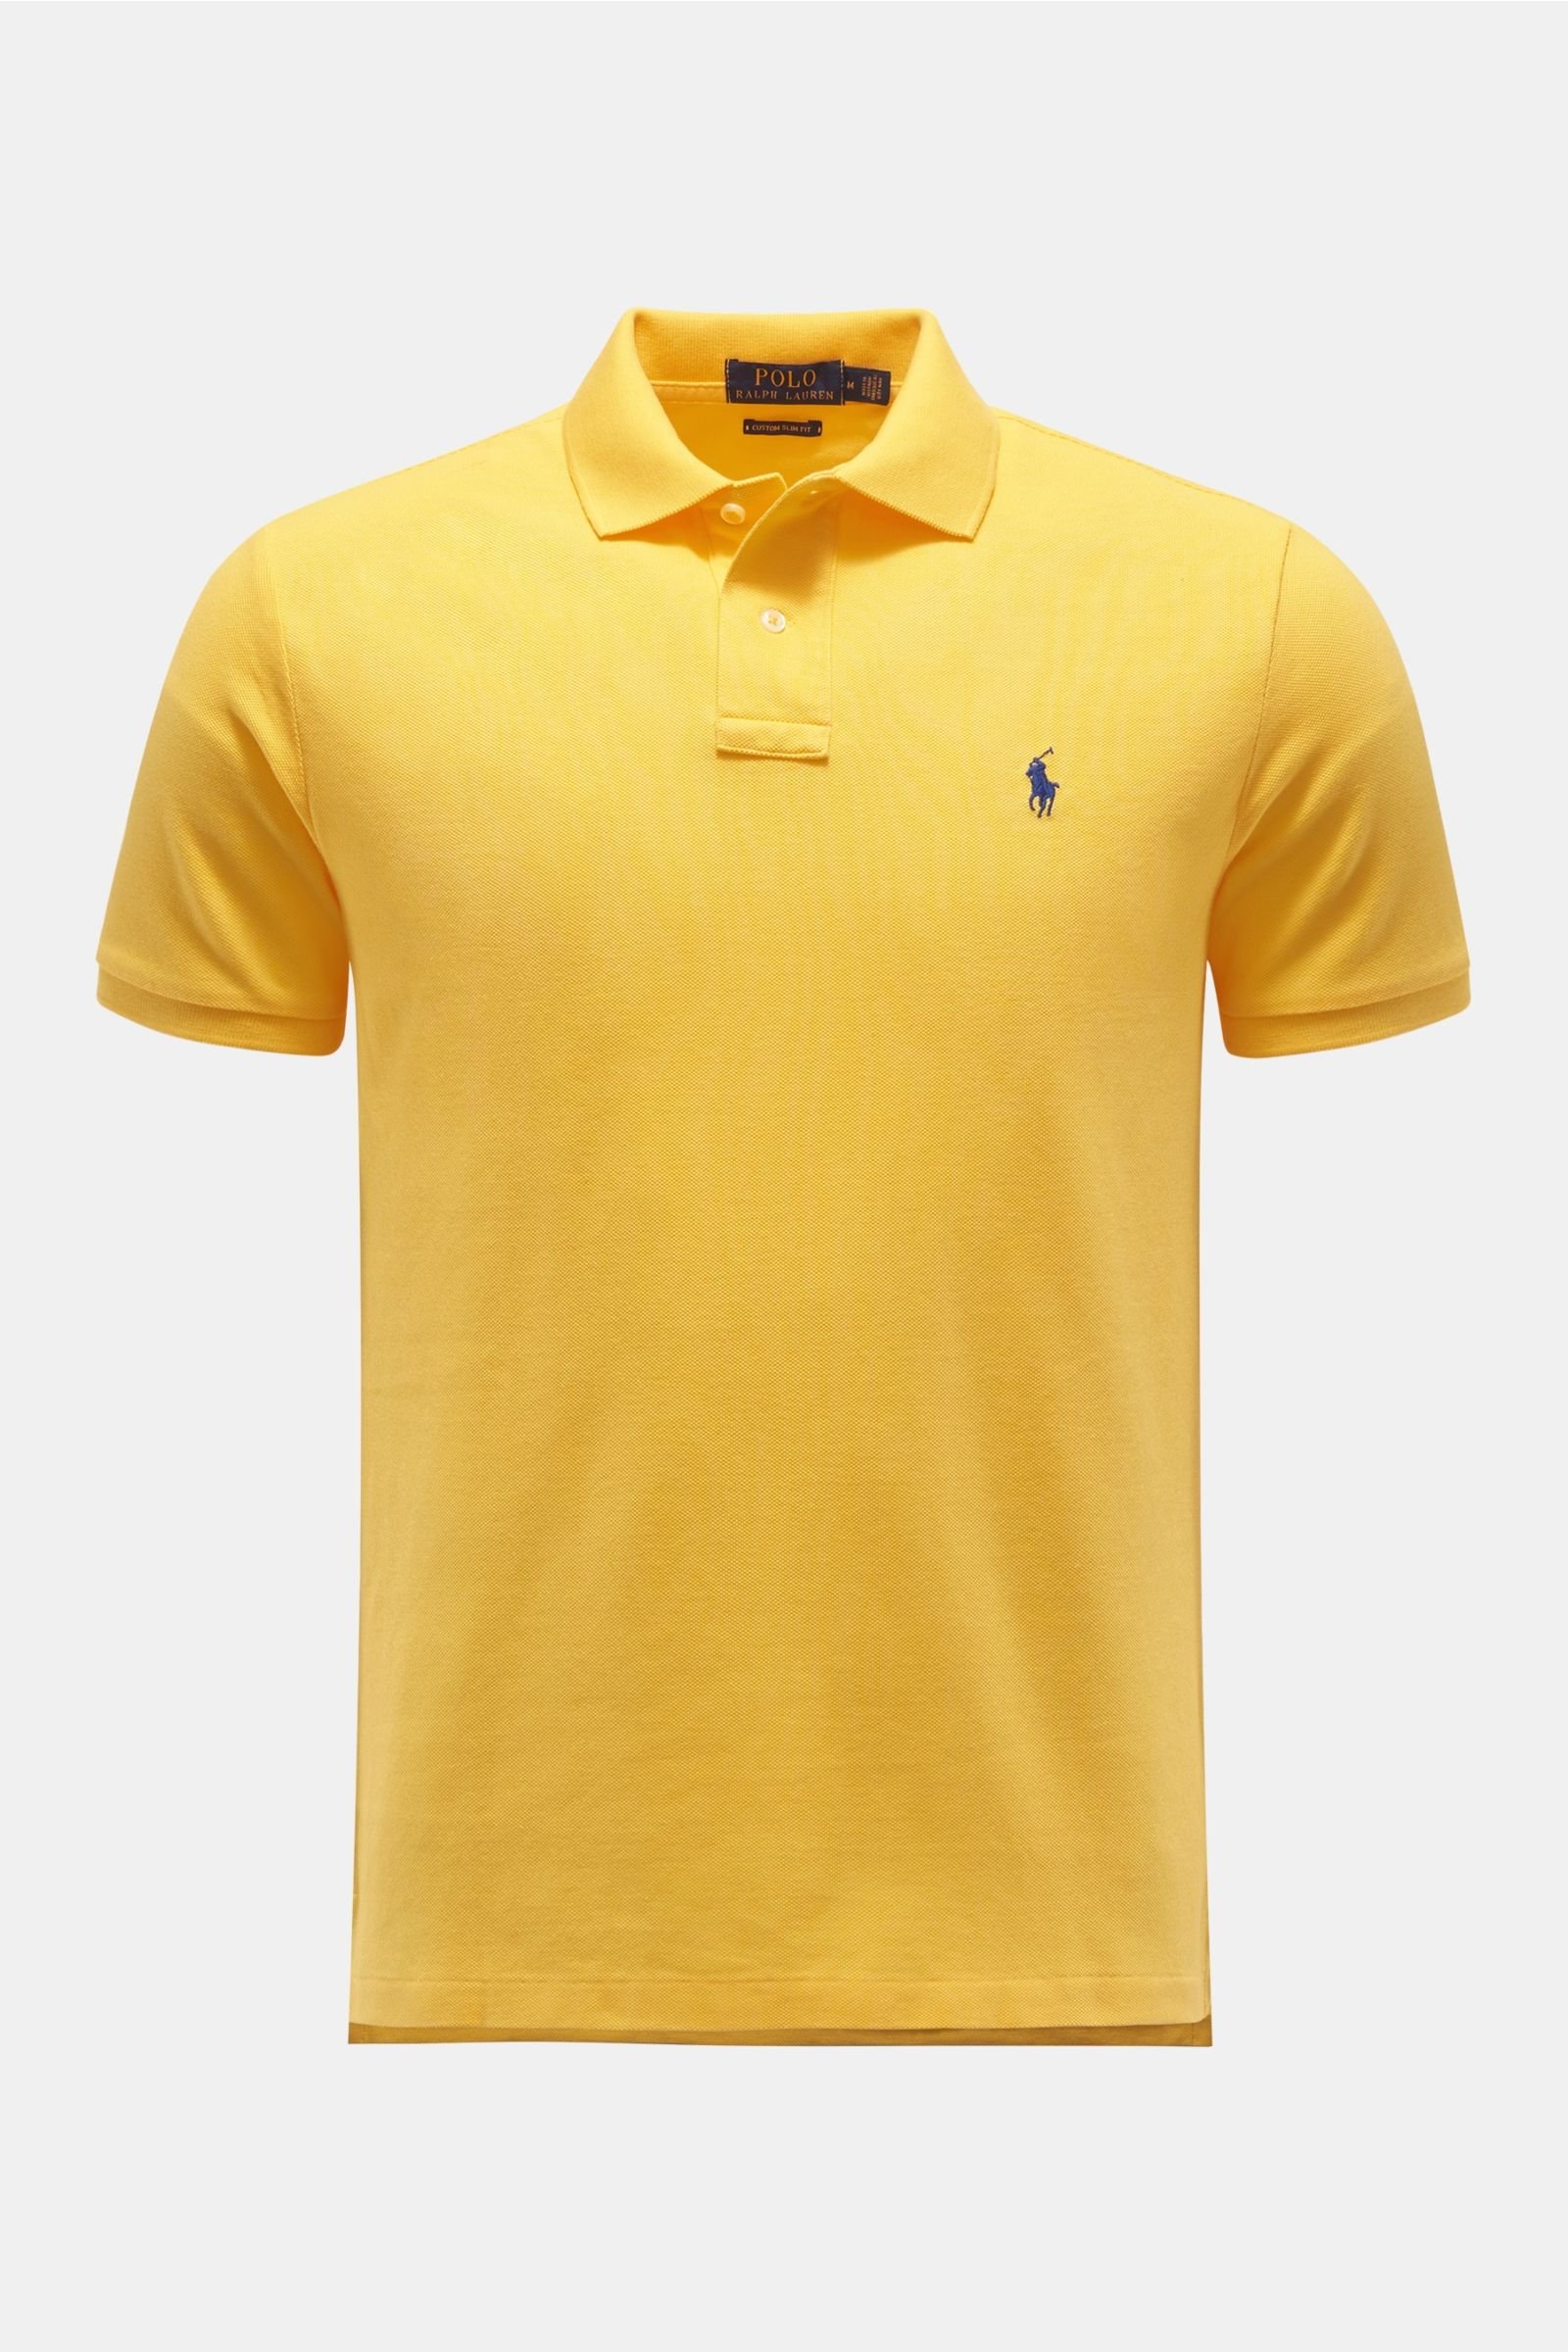 Descubrir 73+ imagen polo ralph lauren t shirts yellow